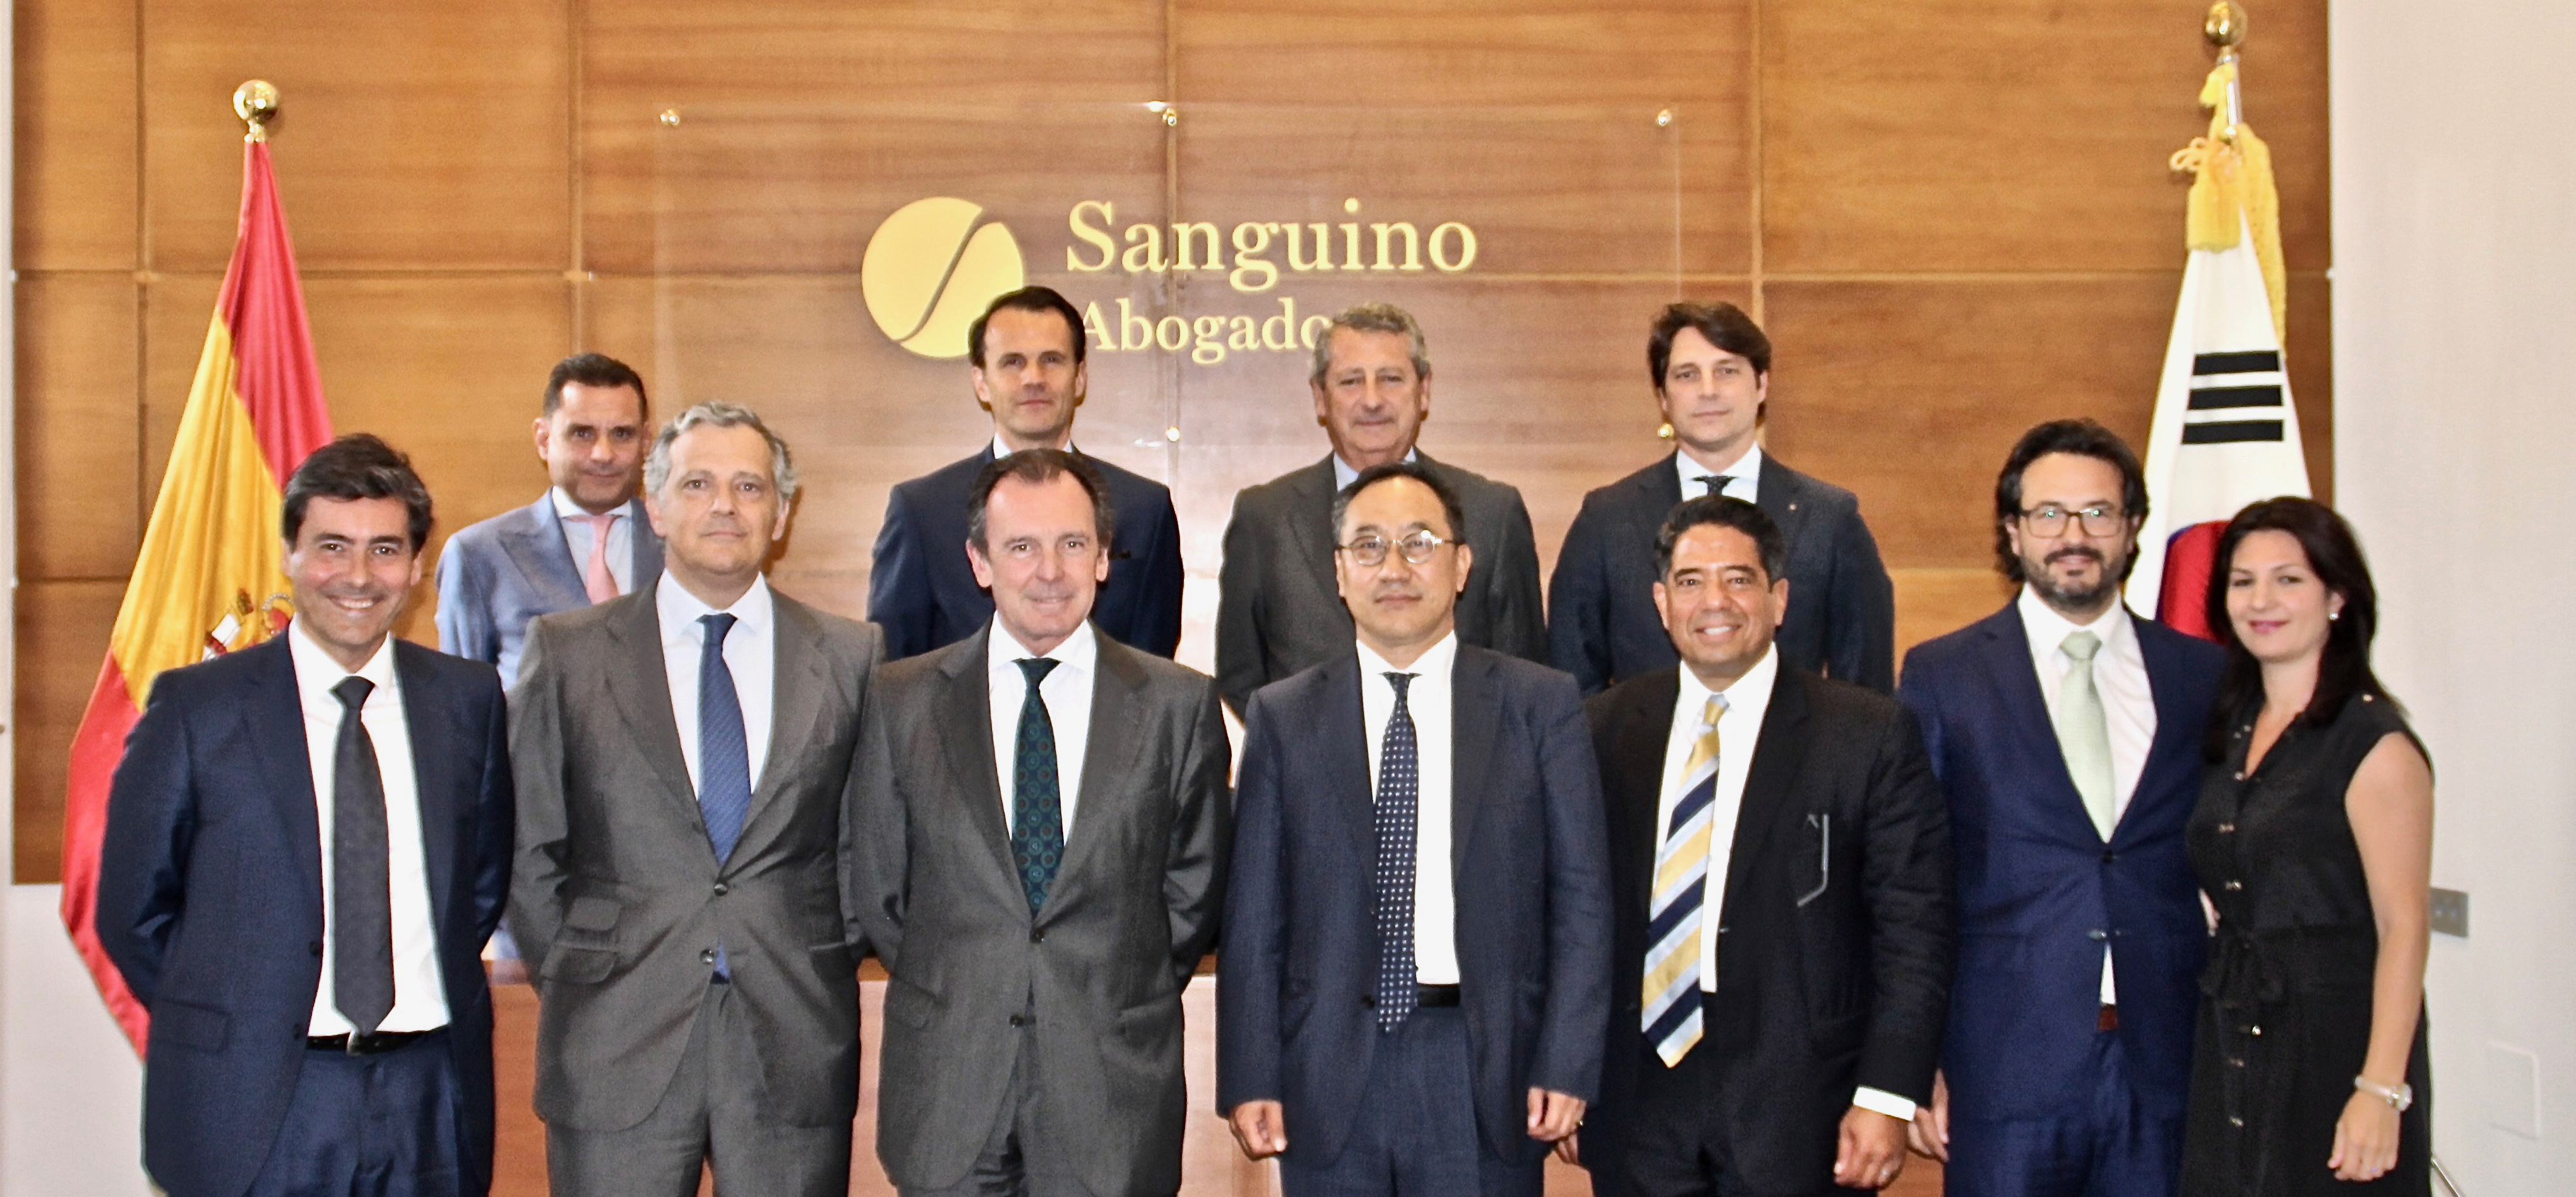 Inversores de Corea del Sur visitan Andalucía y mantienen un encuentro con Sanguino Abogados